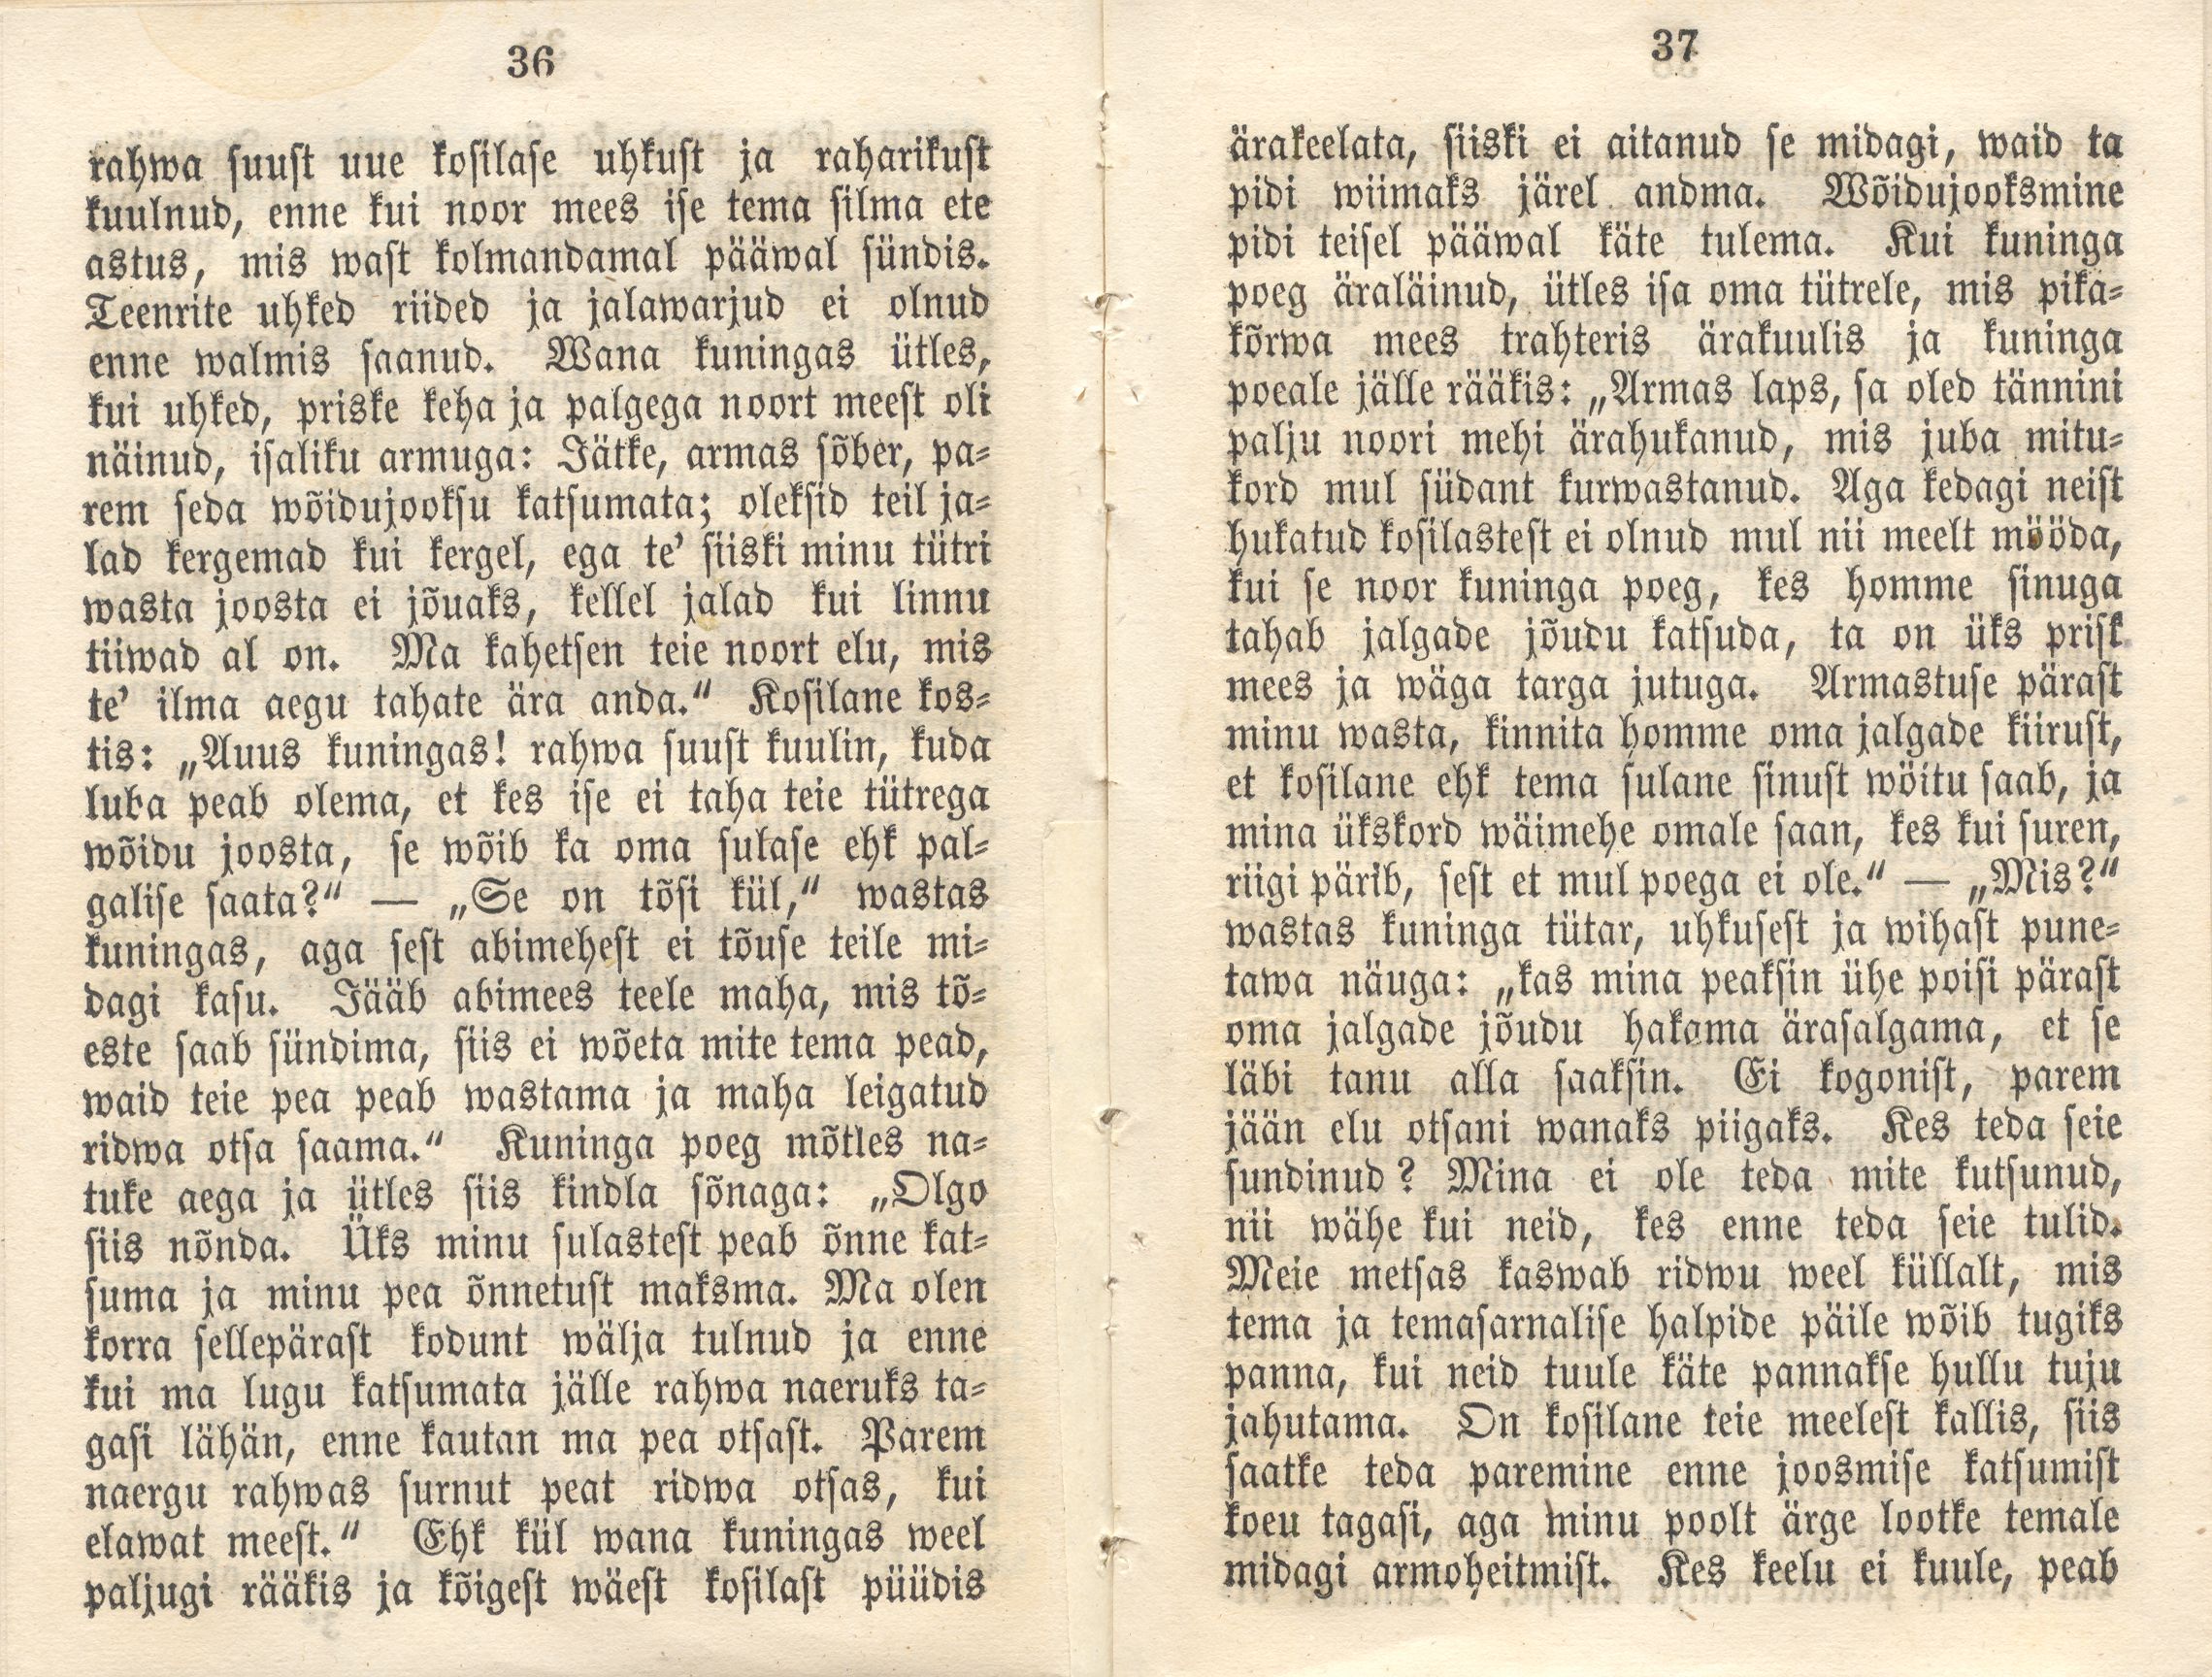 Eesti rahva ennemuistsed jutud ja vanad laulud (1860) | 76. (36-37) Main body of text